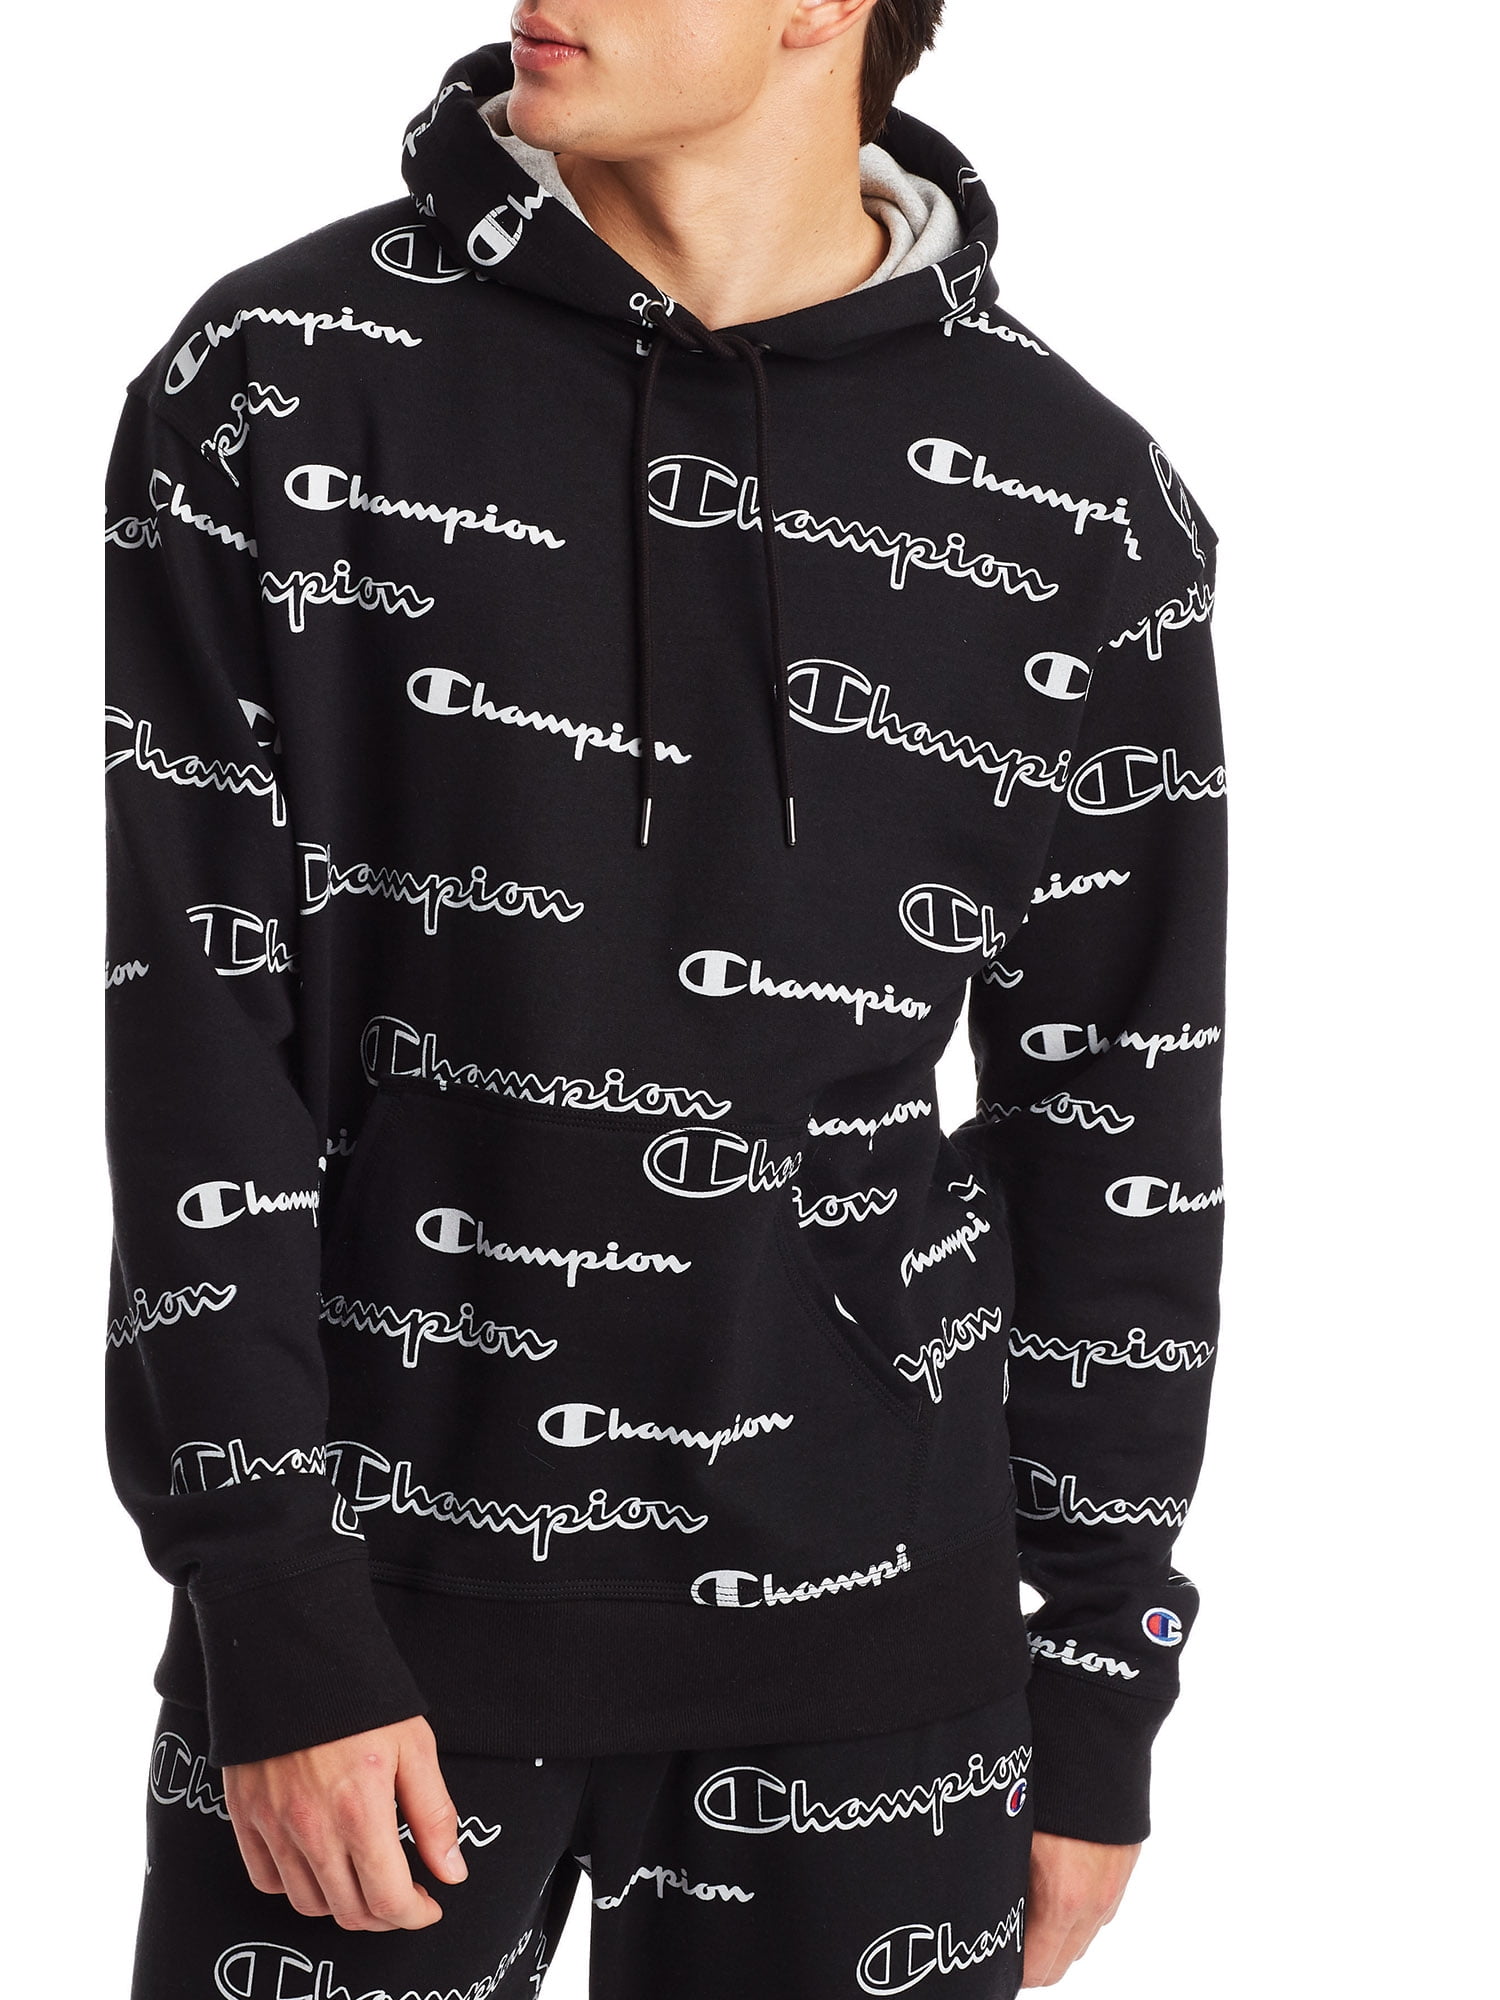 Yeti Men's Brushed Fleece Logo Pullover Hoodie - Black M / Black